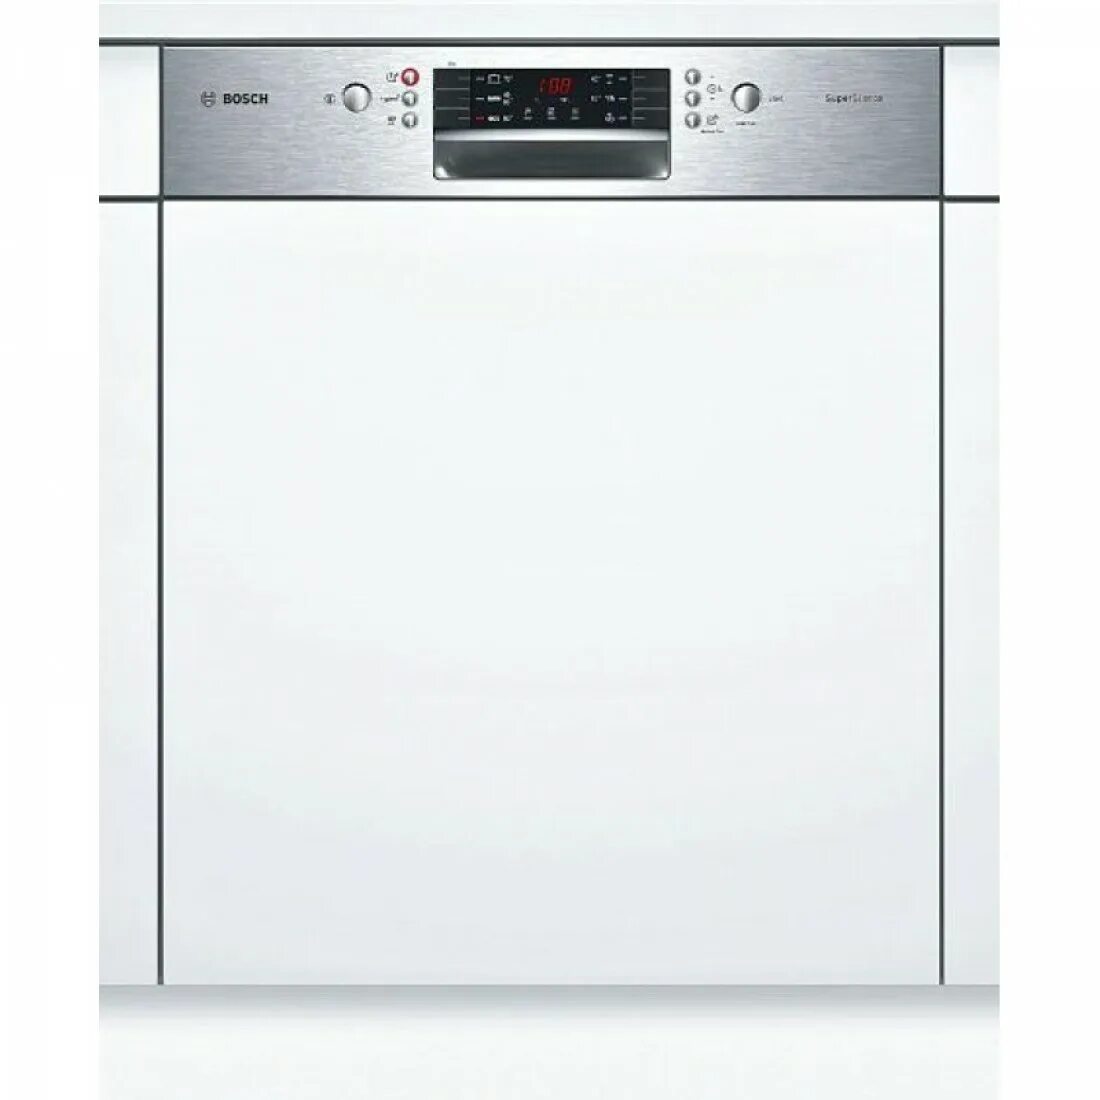 Бош посудомоечная машина 60 встраиваемая купить. Посудомоечная машина Siemens SN 536s01 ke. Посудомоечная машина Bosch SMI 40m65. Bosch SMI 46ks00 t. Посудомоечная машина Bosch SMI 46ks01 e.